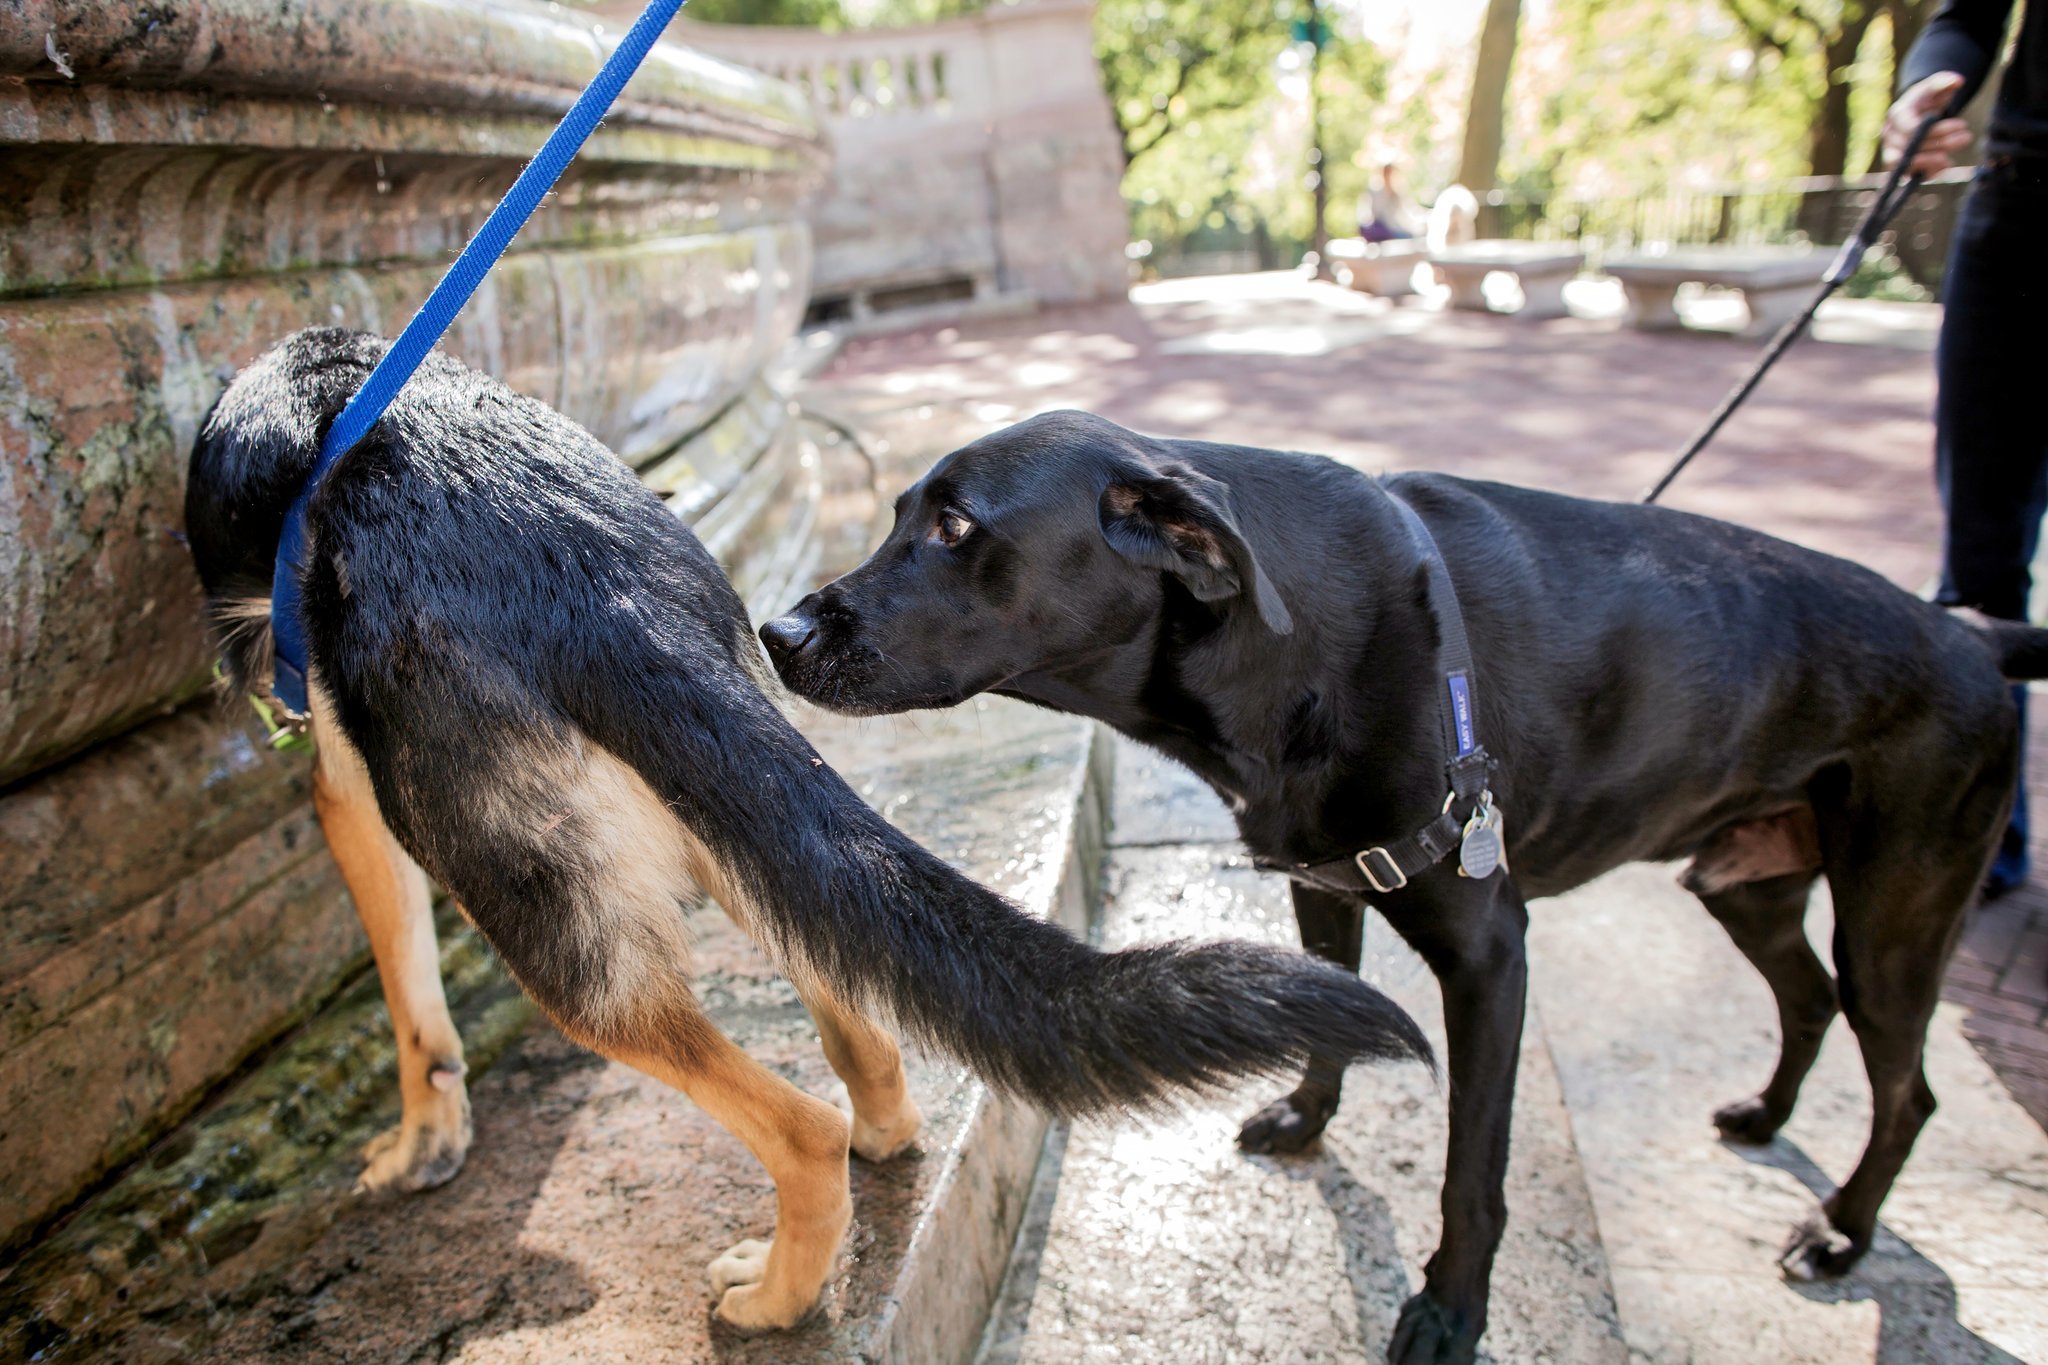 A szagok, illatok, hormonok sok információt árulnak el a kutyáknak egymásról is